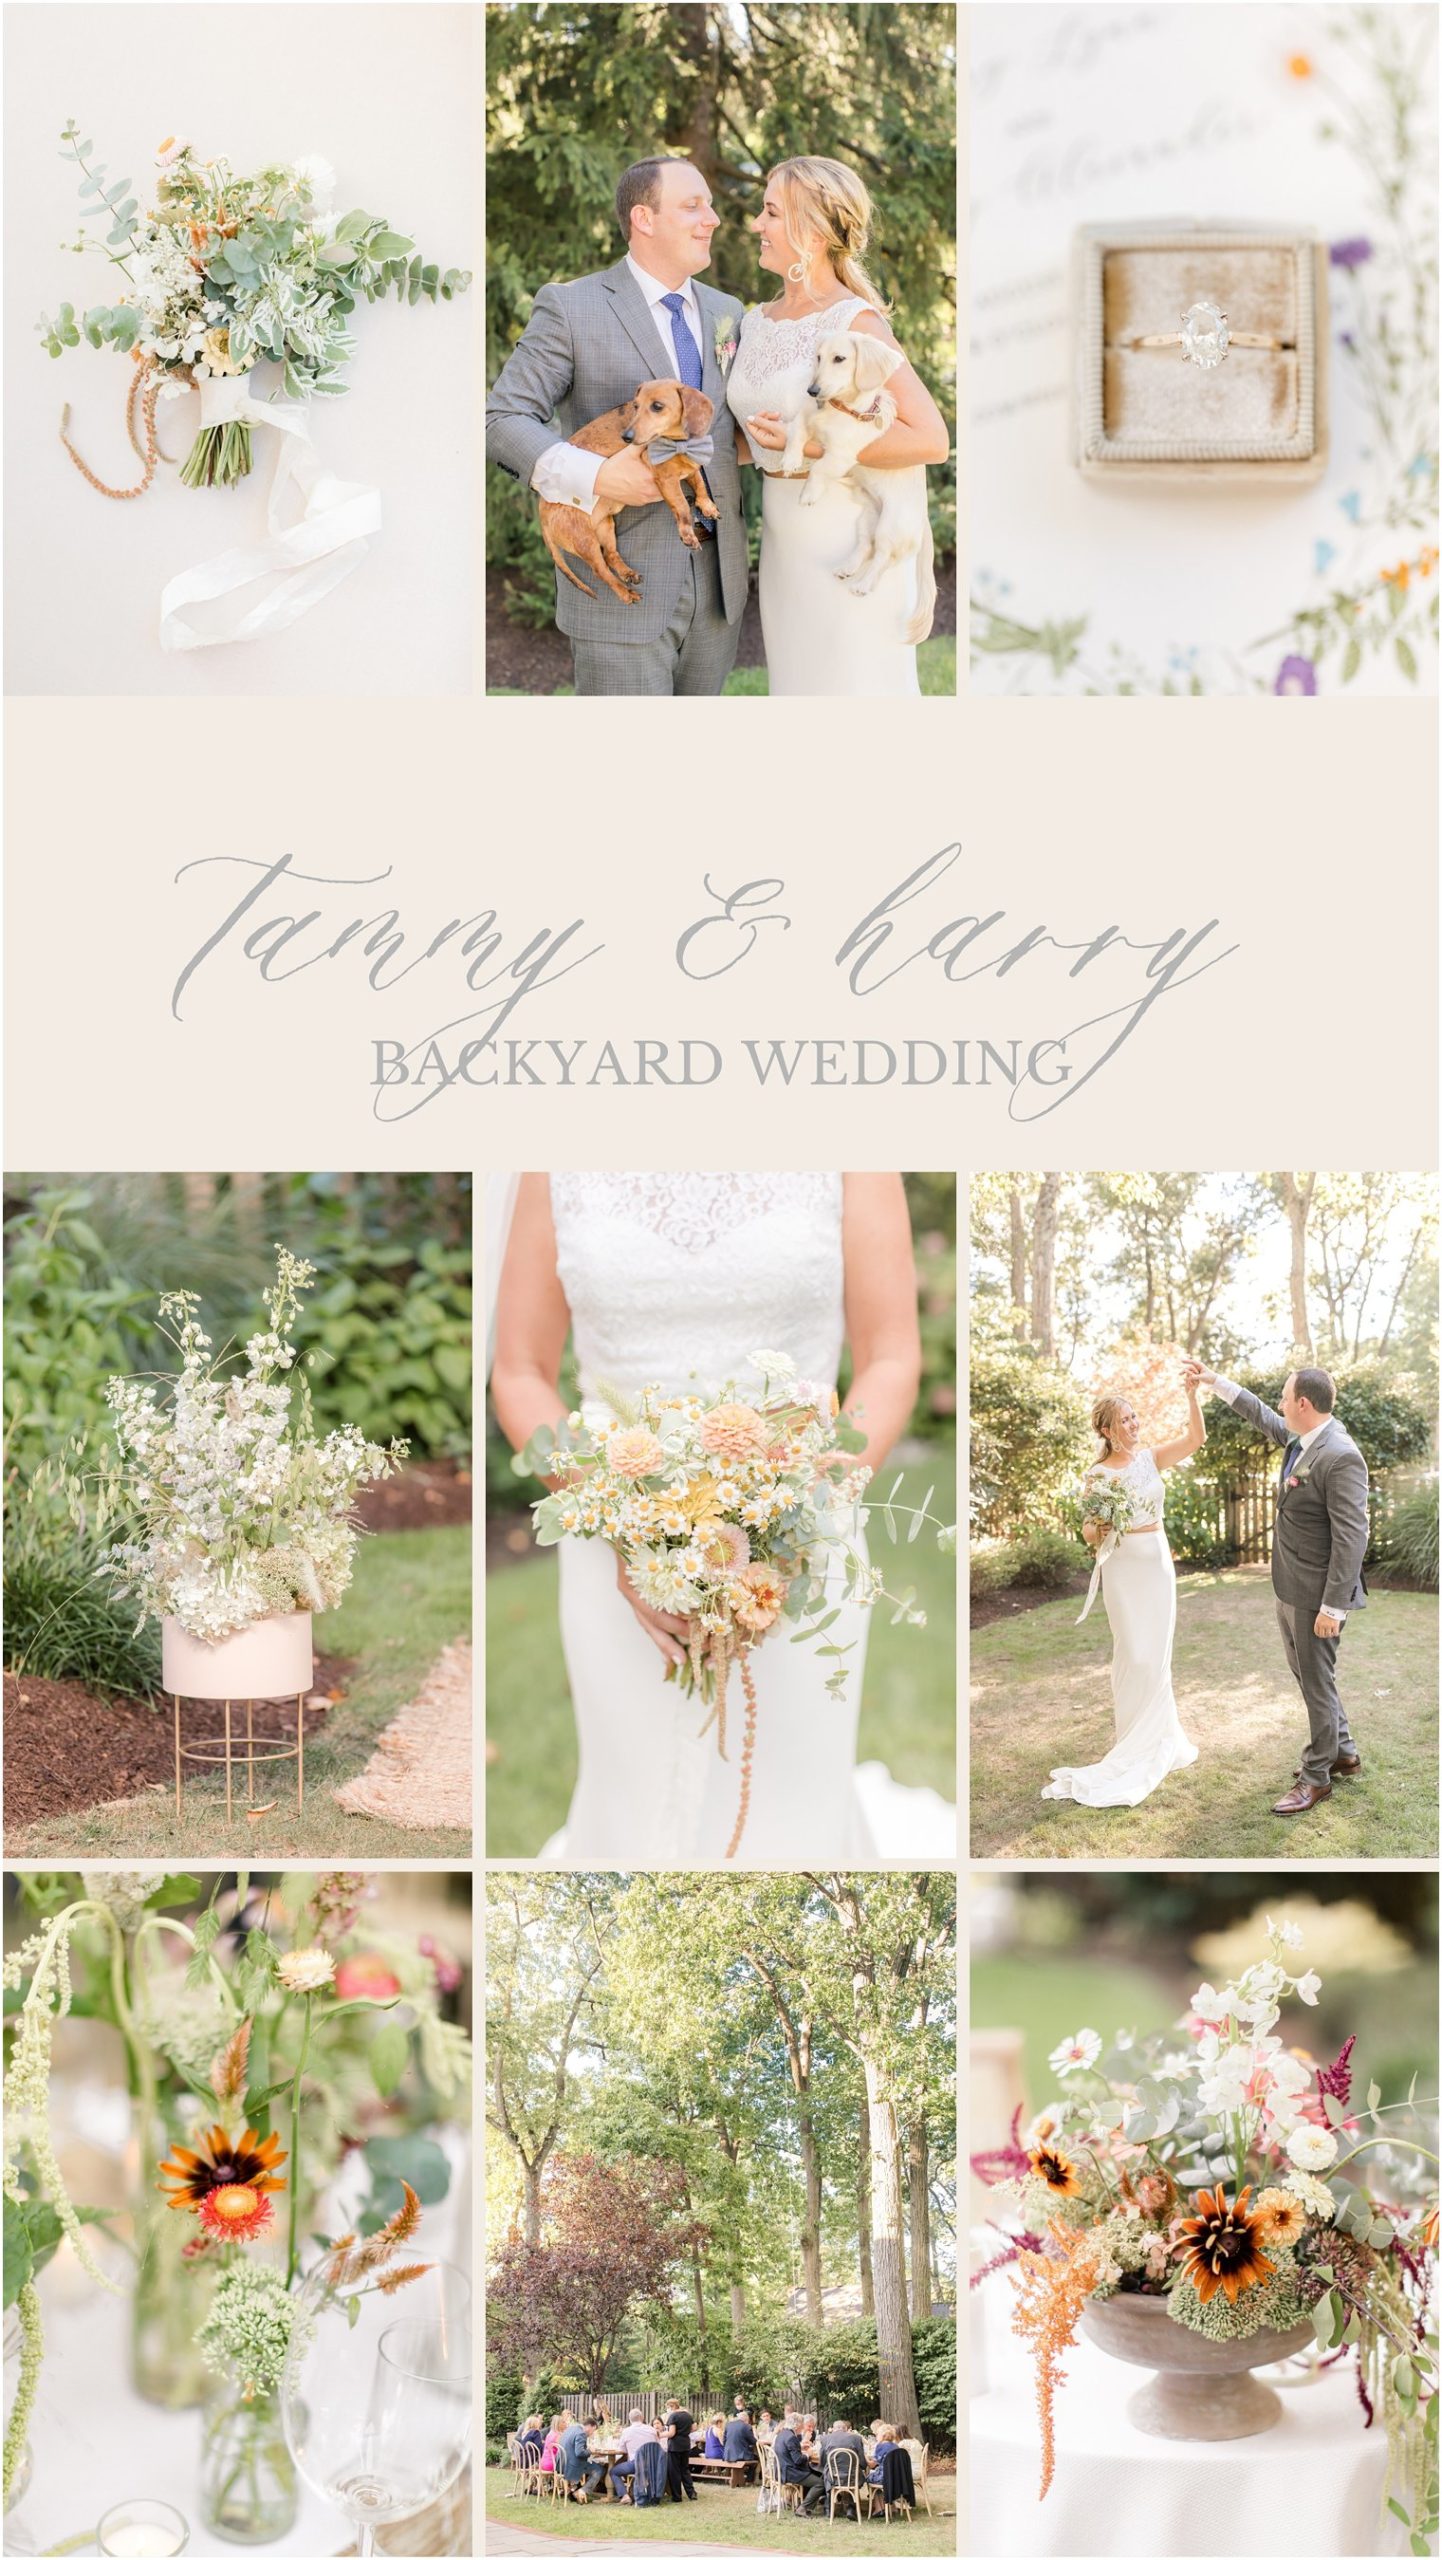 Elegant backyard wedding with wildflowers